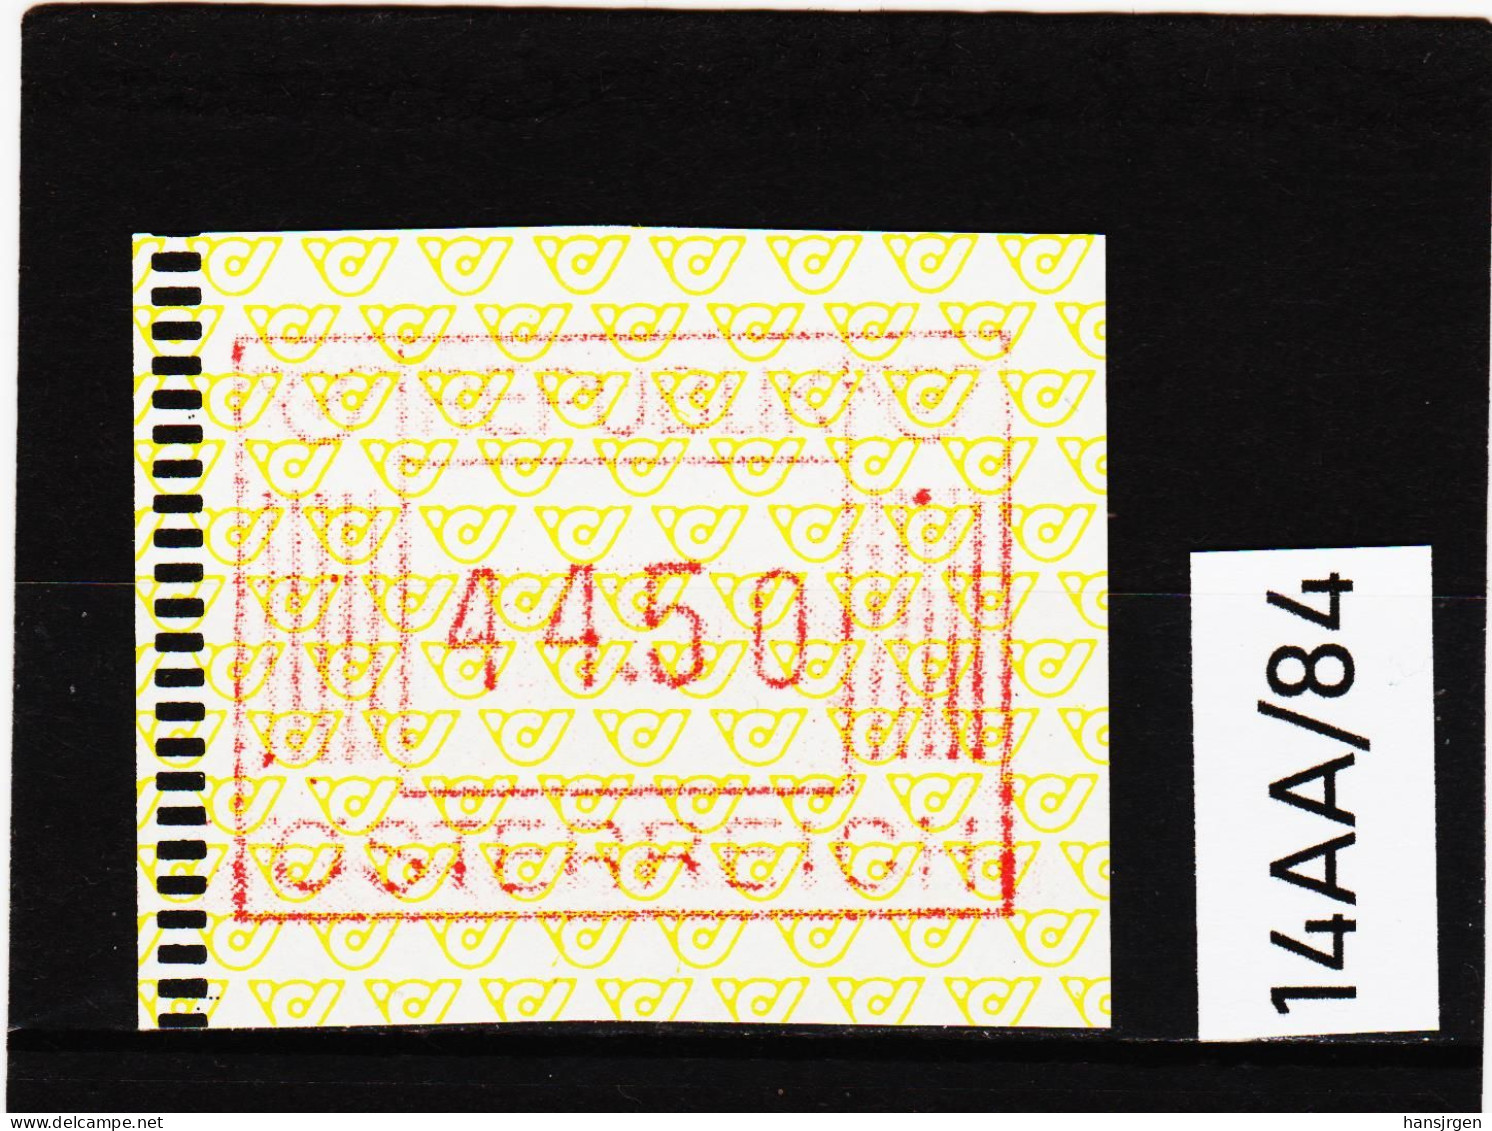 14AA/84  ÖSTERREICH 1983 AUTOMATENMARKEN 1. AUSGABE  44,50 SCHILLING   ** Postfrisch - Machine Labels [ATM]